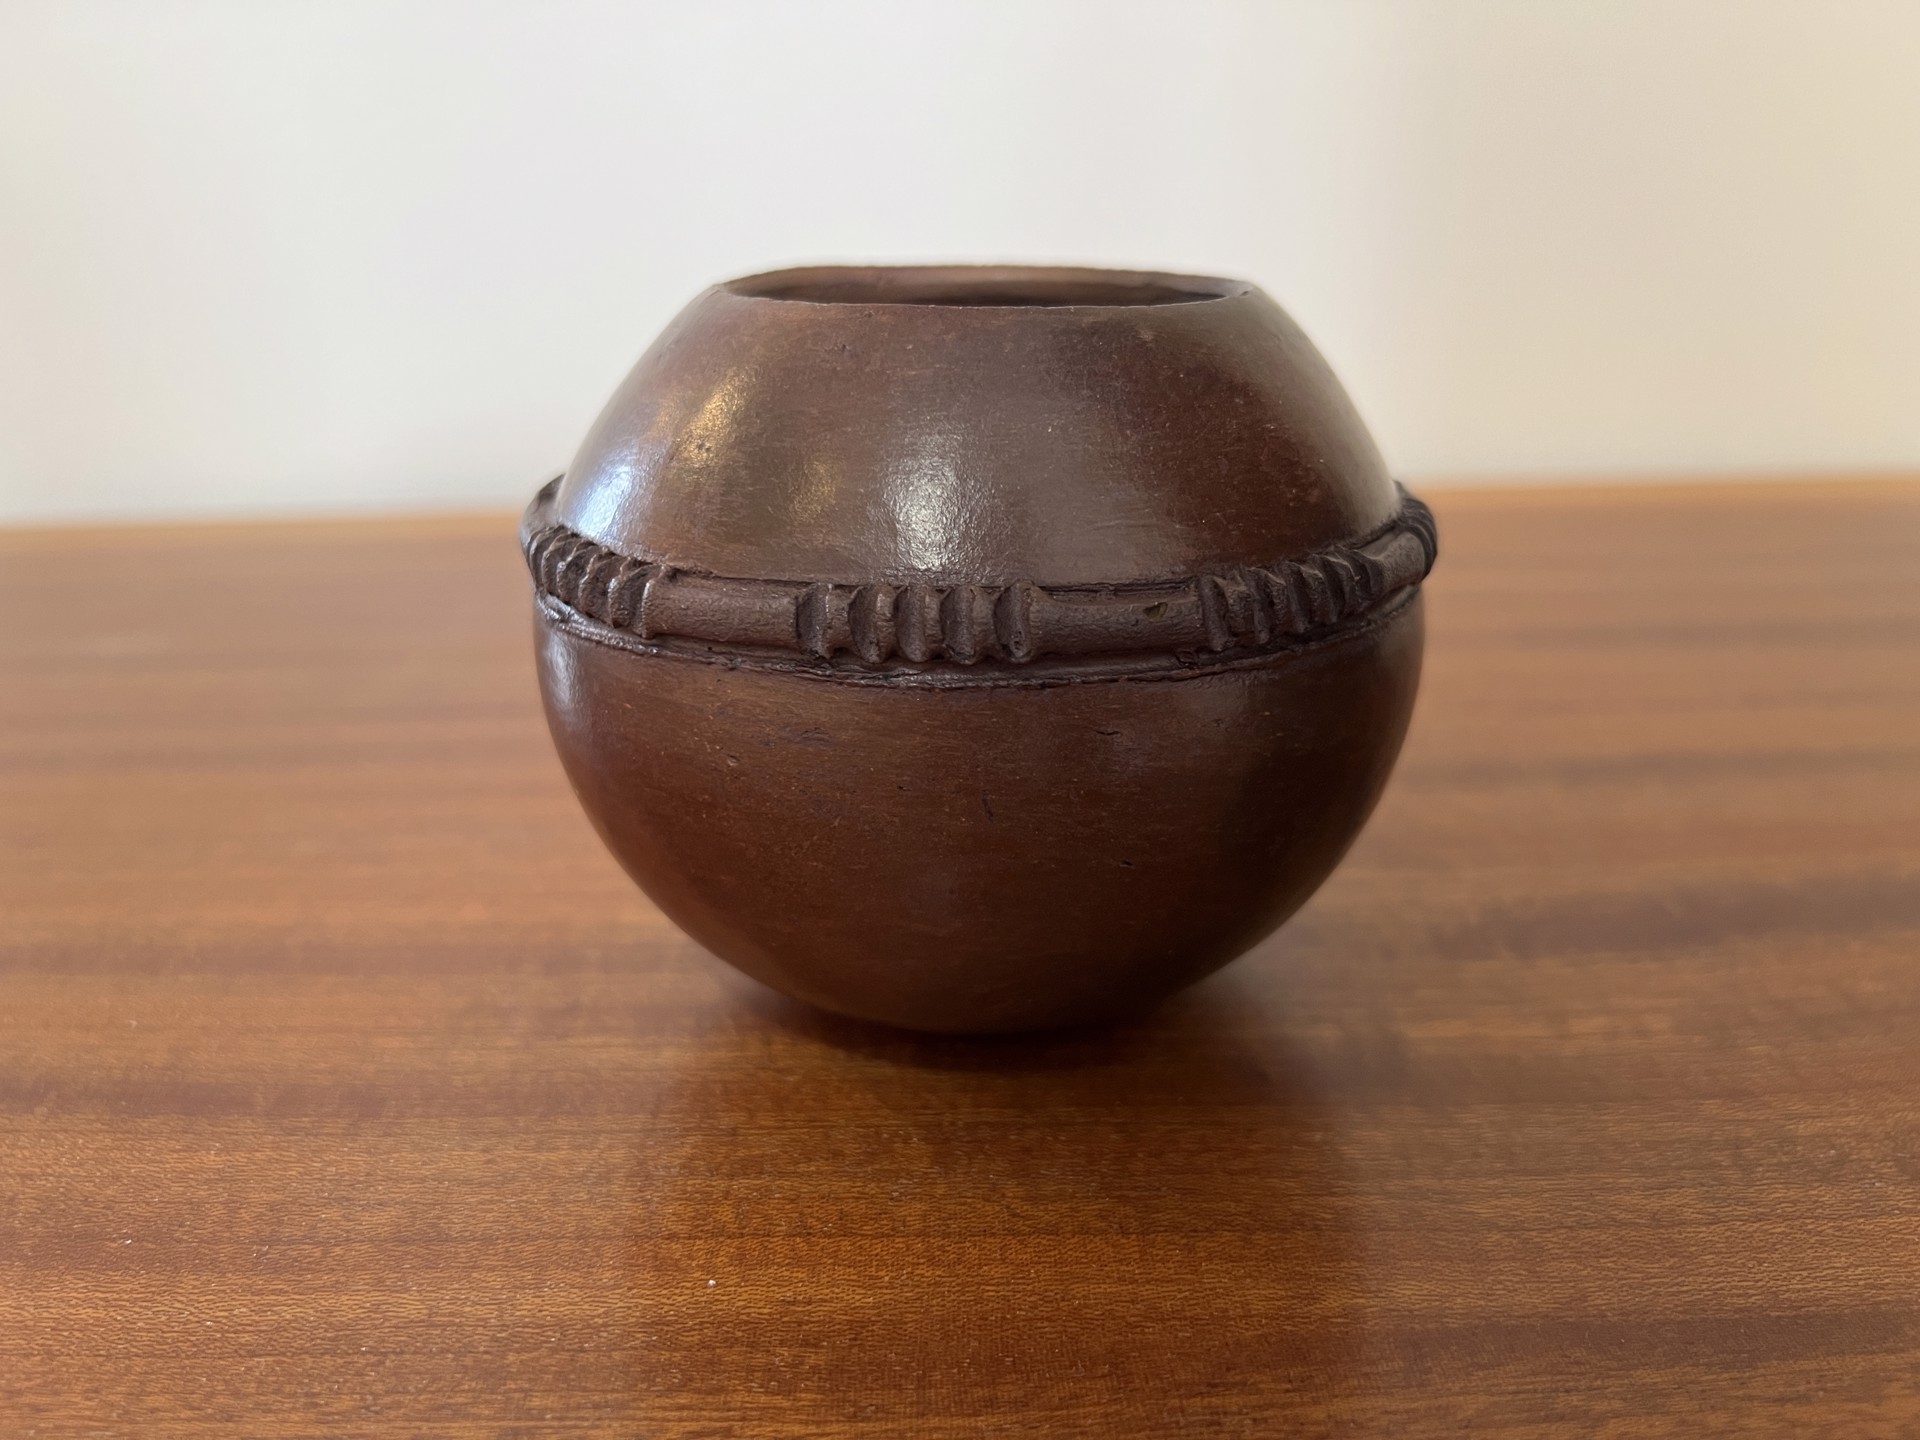 Small Zulu Beer Pot by Jabulile Nala